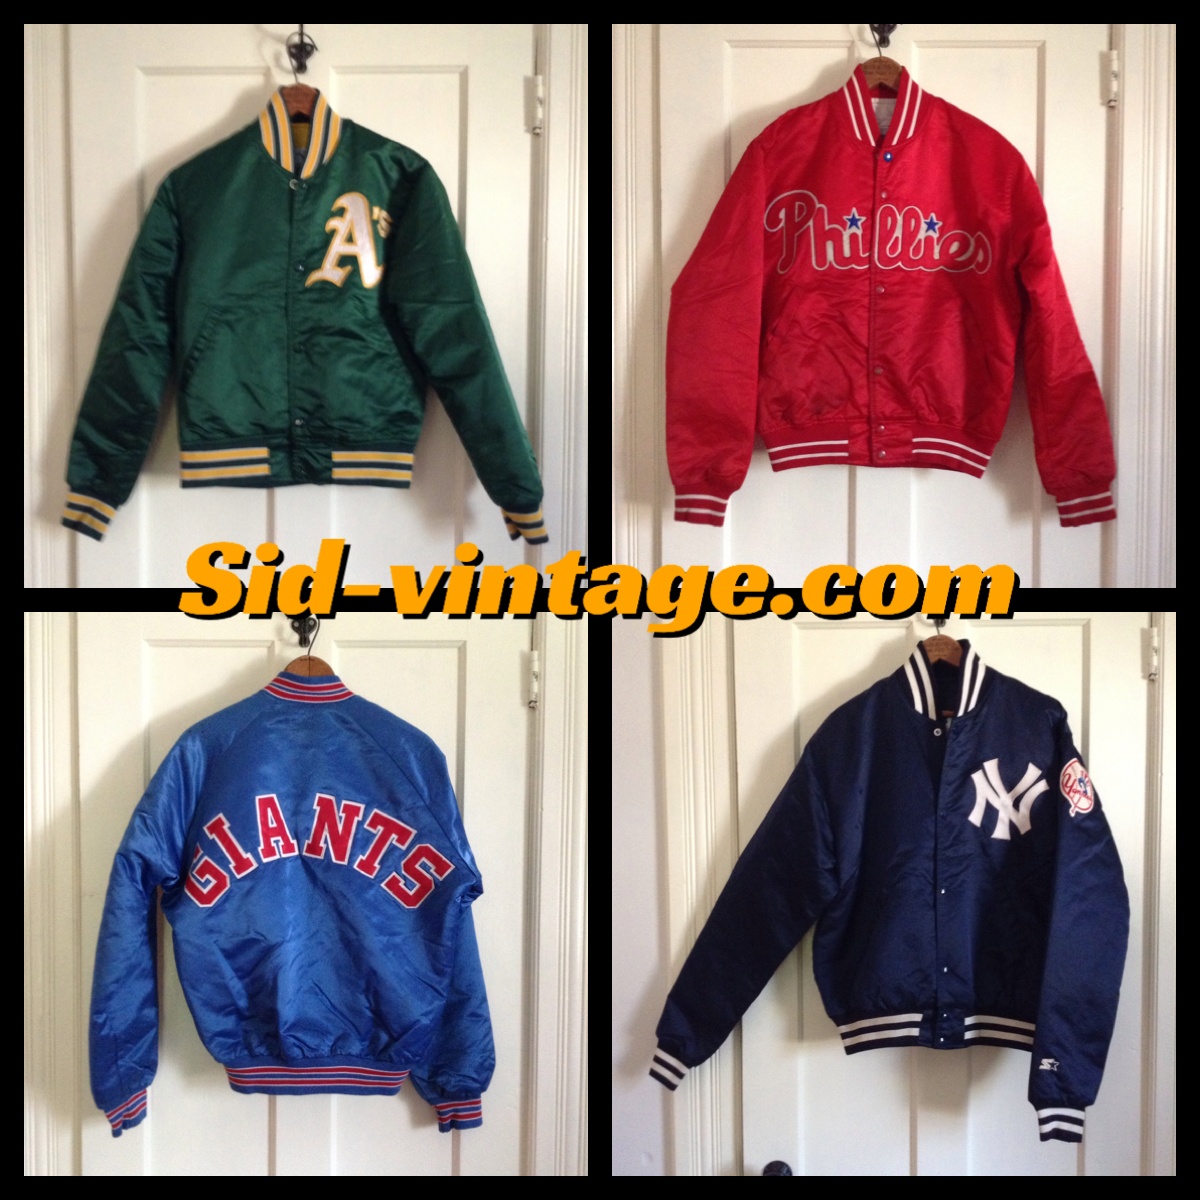 1980’s Starter Jackets – Sid Vintage